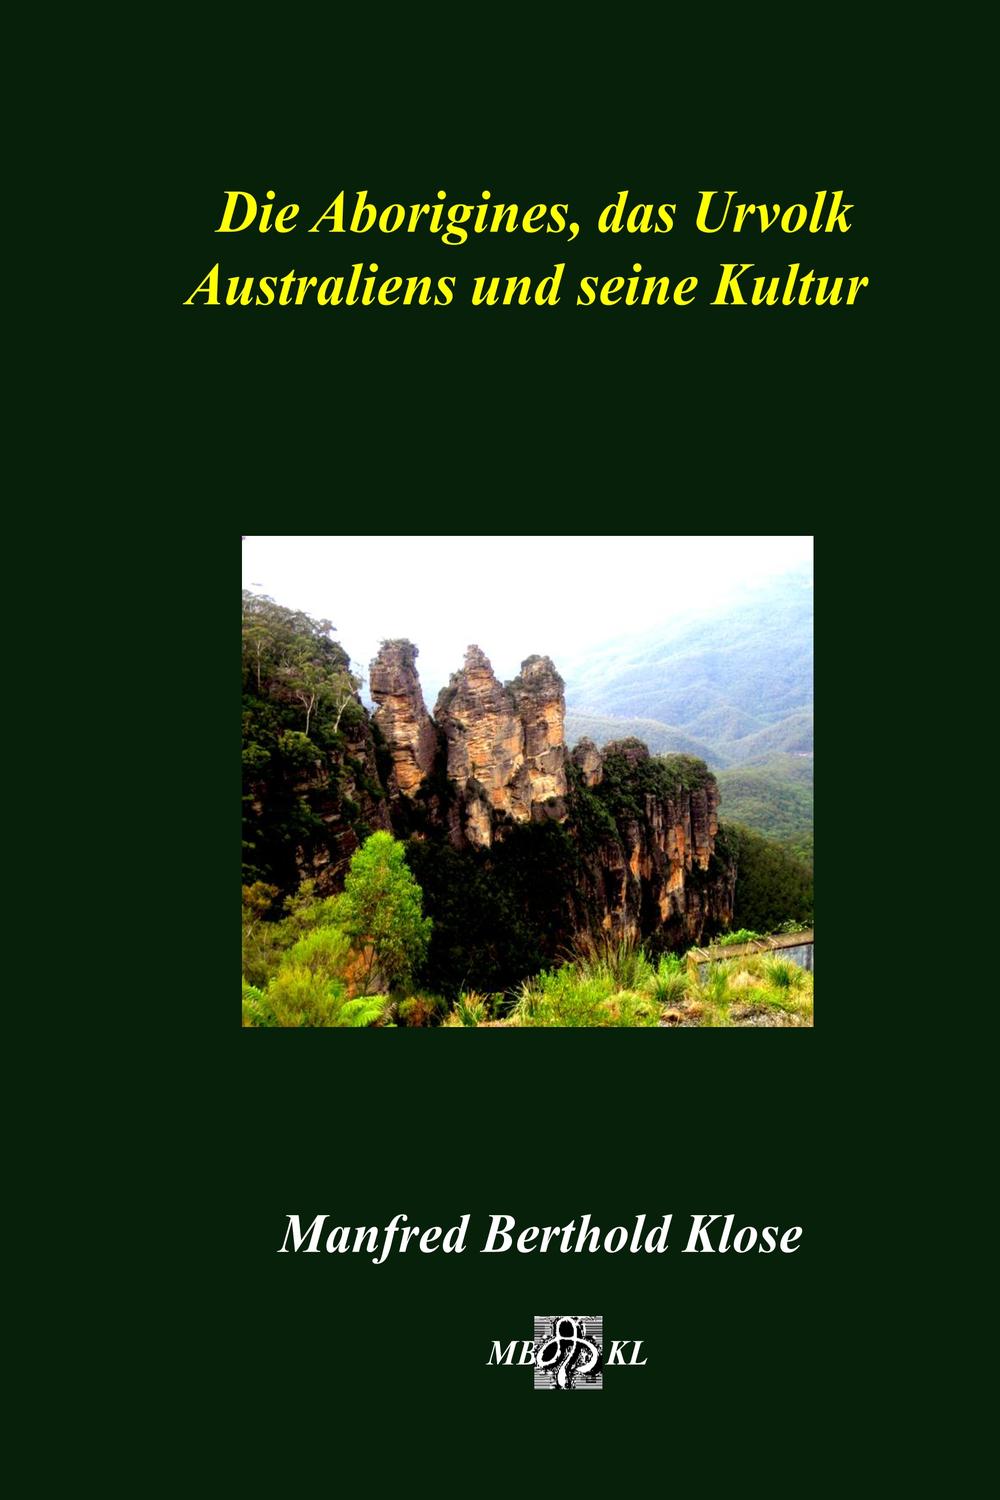 Die Aborigines, das Urvolk Australiens und seine Kultur - Manfred Berthold Klose